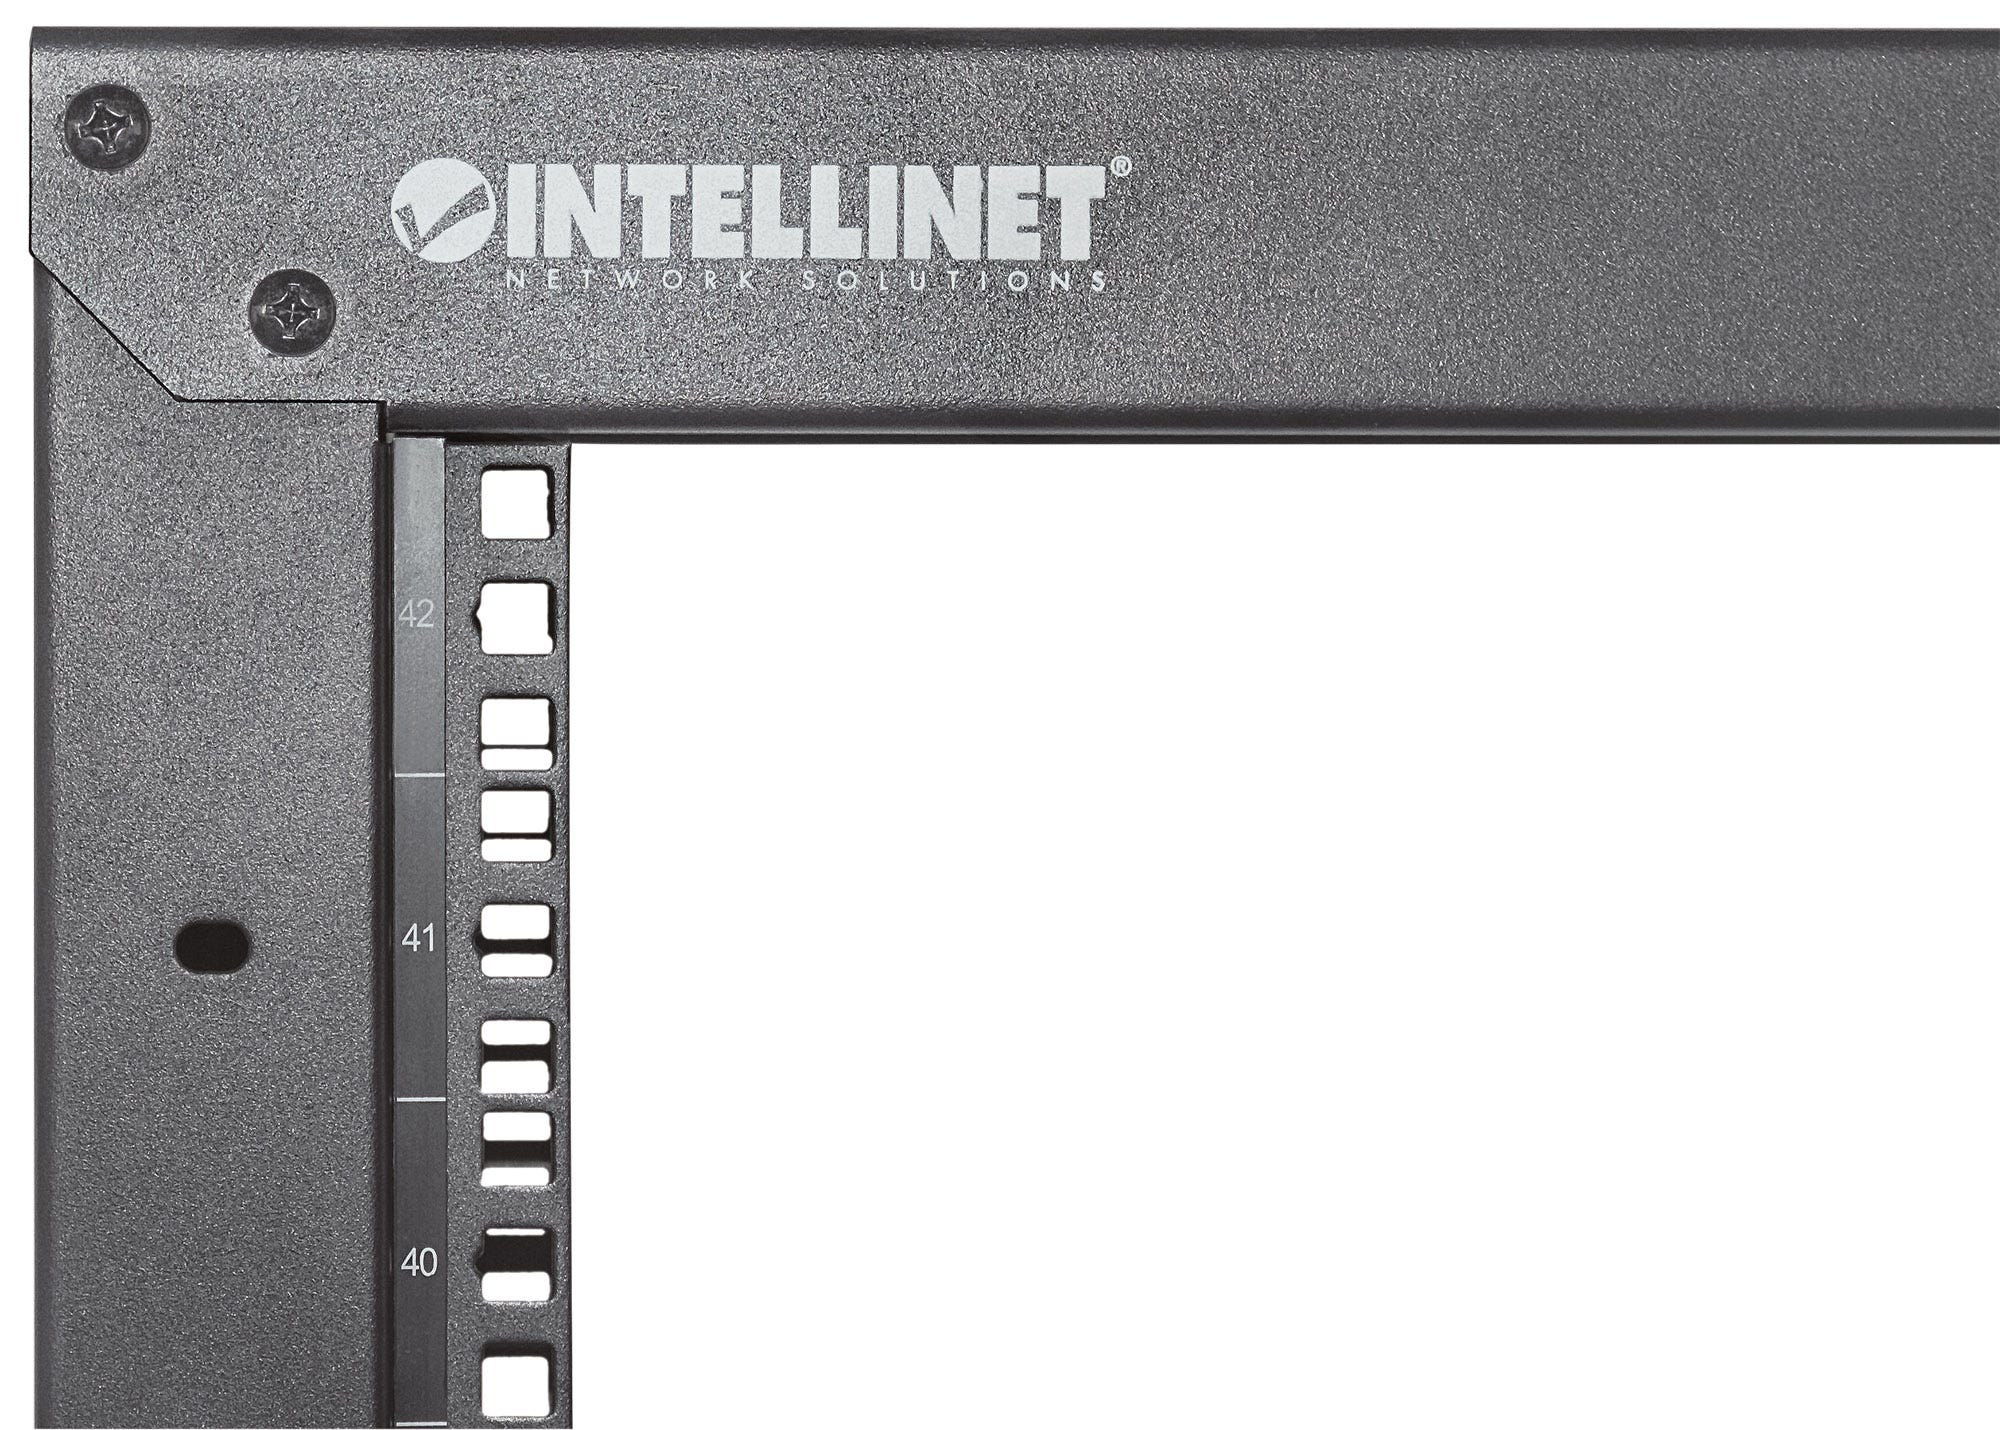 Intellinet 19" 2-Pfosten Laborgestell, 42 HE, Flatpack, schwarz - Schrank - offener Rahmen - 2 Pfosten - Schwarz, RAL 9005 - 42HE - 48.3 cm (19")